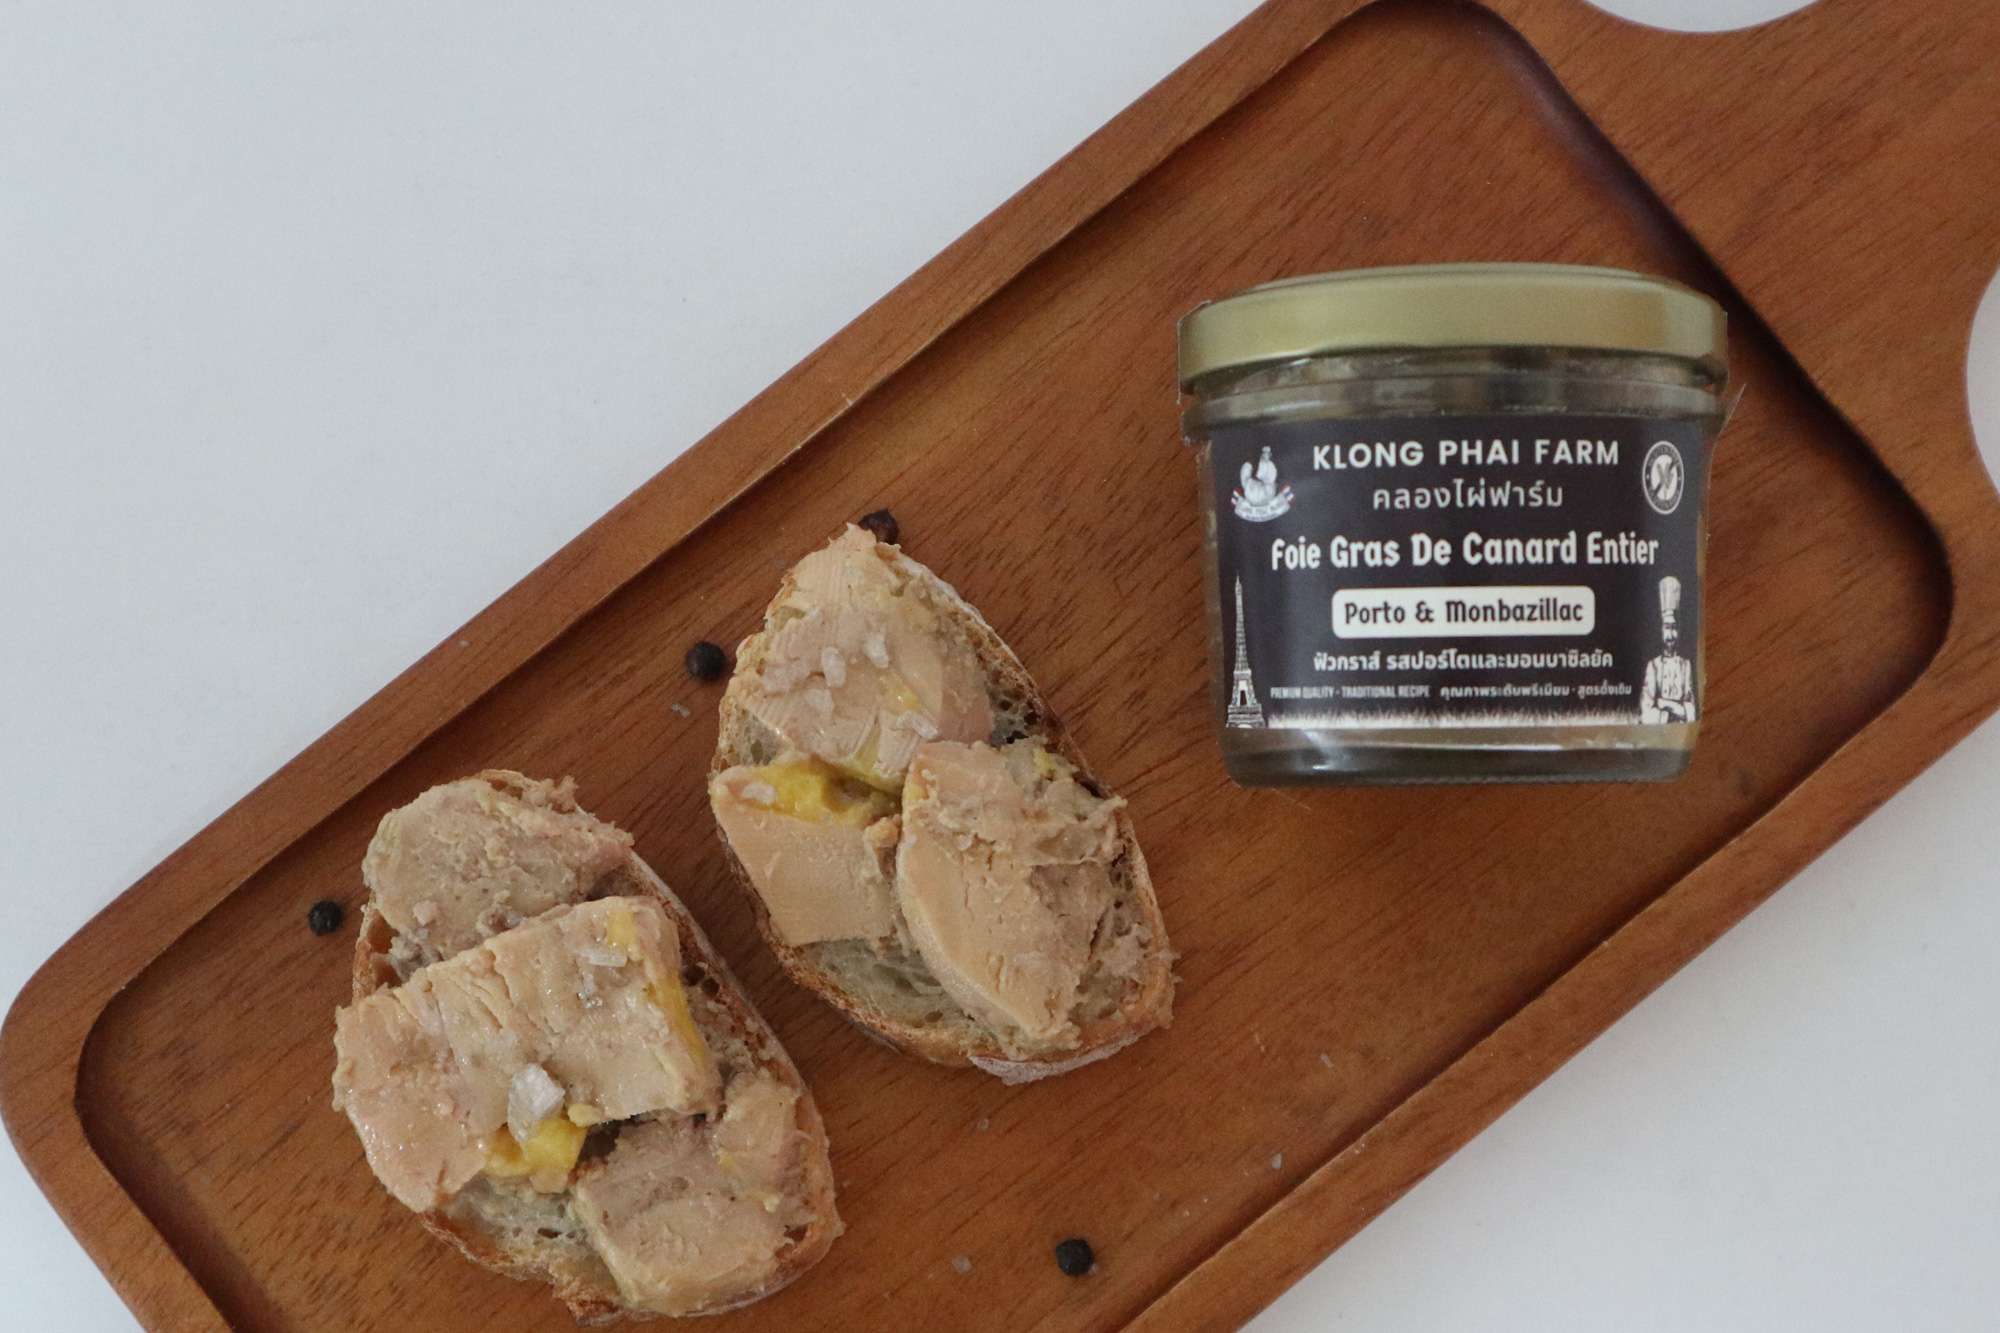 Duo de foie gras entier de canard et d'oie ROUGIÉ 